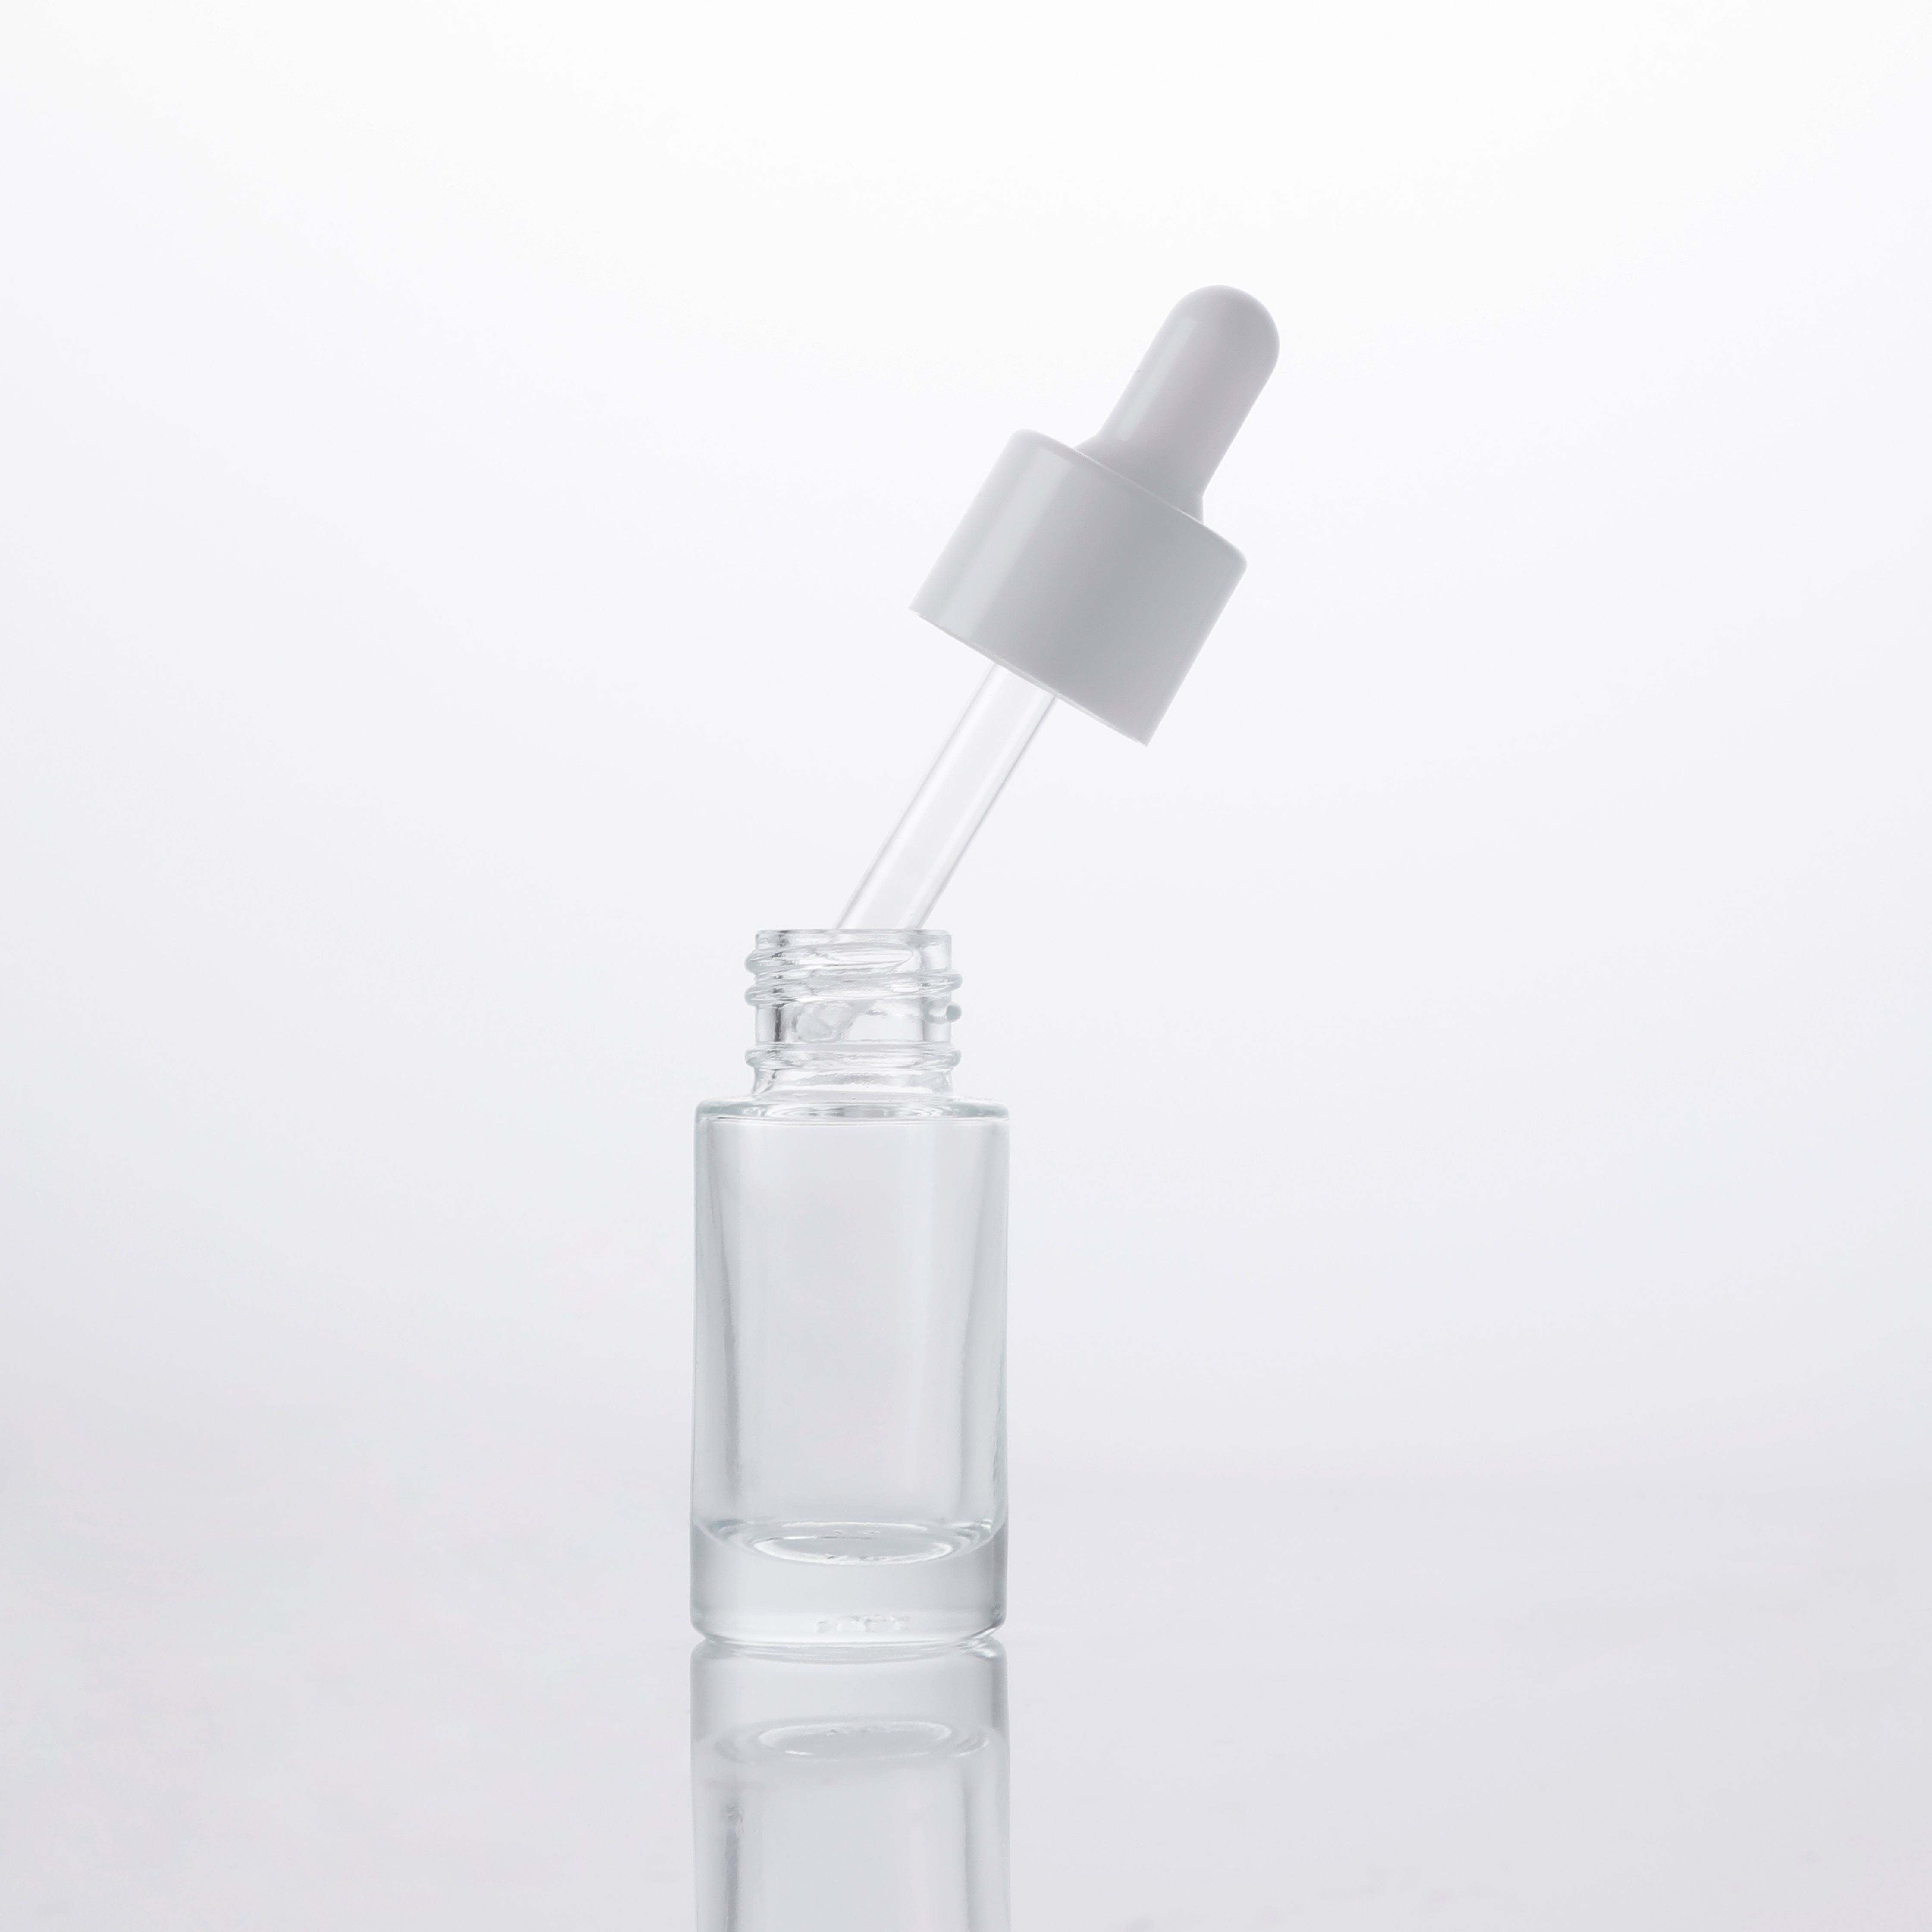 Многоцелевой многоразовый парфюм круглой формы для ухода за кожей, эфирное масло, сыворотка, пустая прозрачная жидкая емкость, 10 мл, 15 л, 20 мл, капельницы, стеклянные бутылки